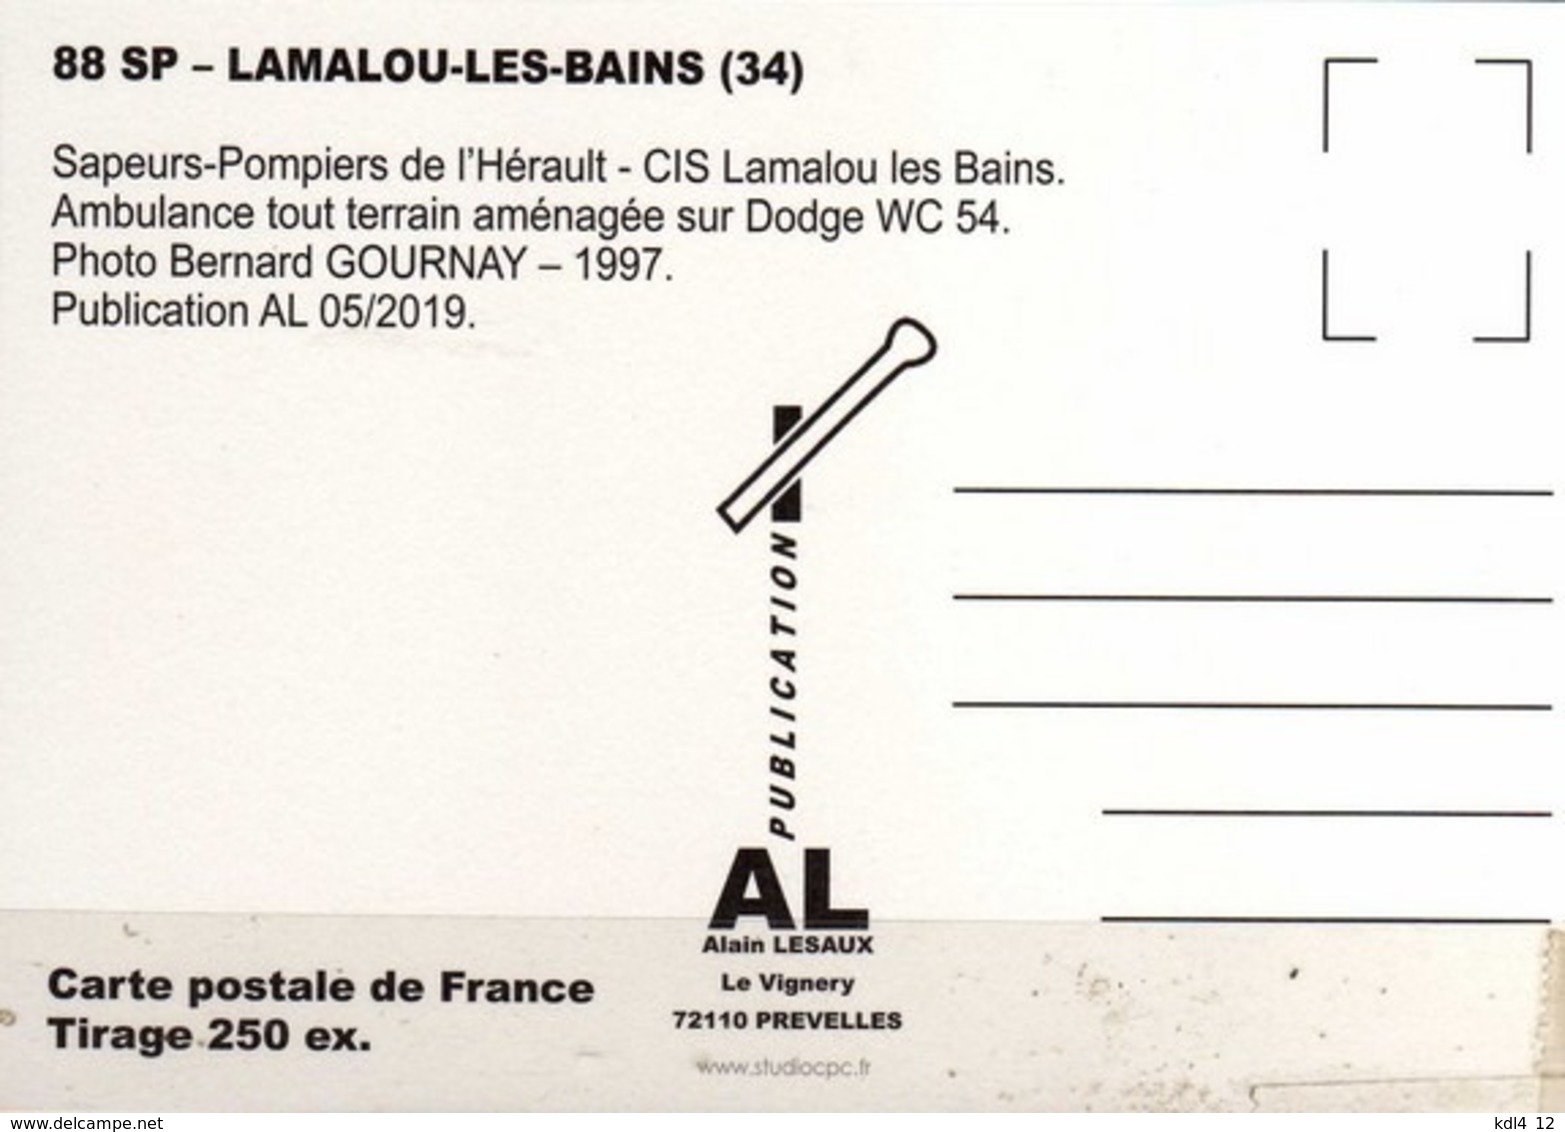 AL SP 88 - Ambulance Tout Terrain - Dodge WC 54 - LAMALOU LES BAINS - Hérault - Lamalou Les Bains